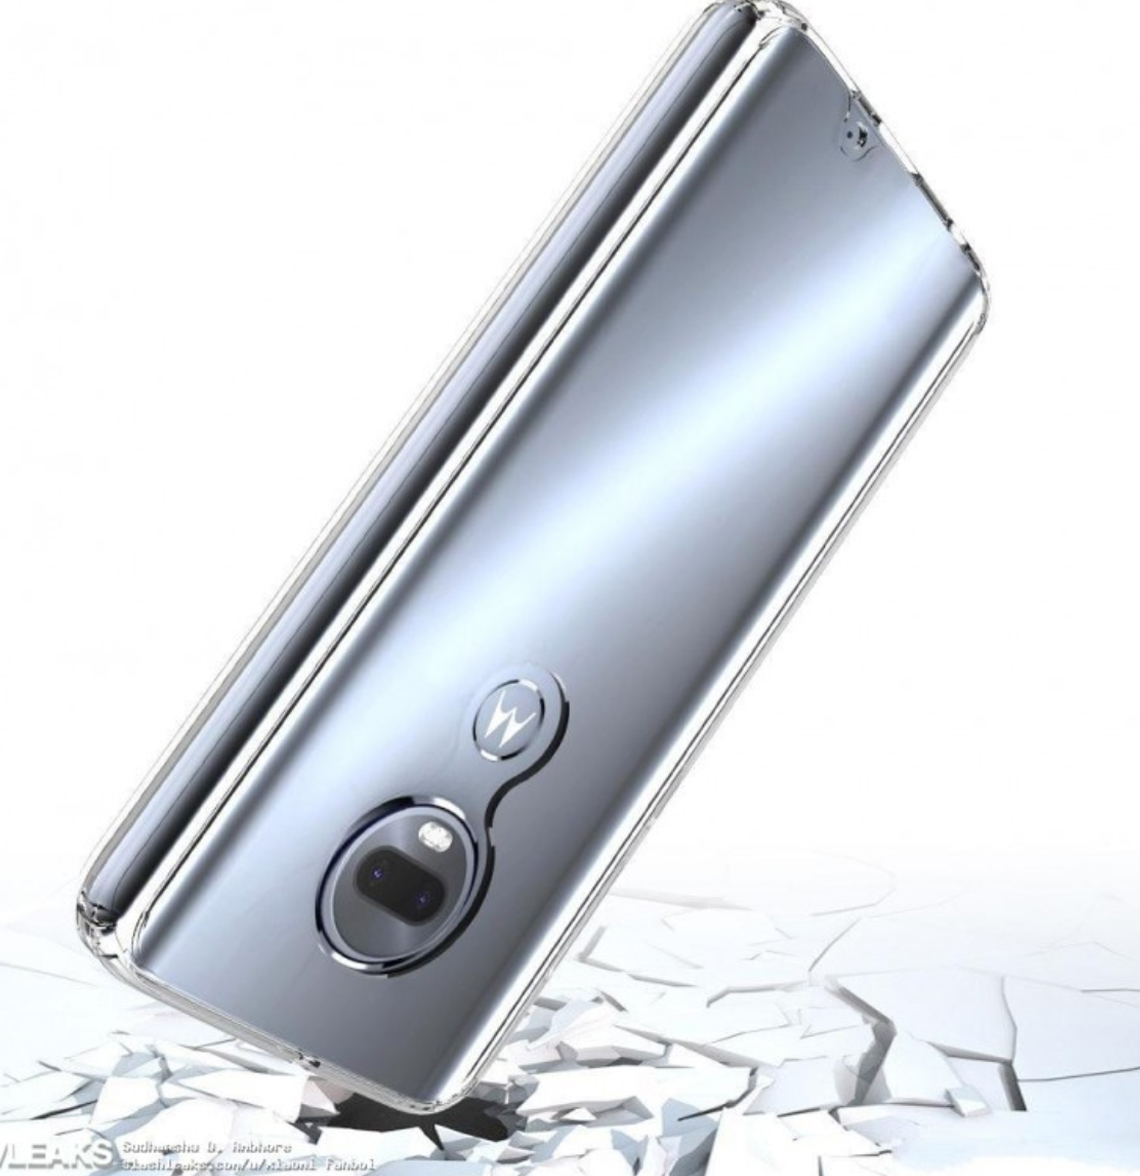 Versi baru dari Motorola Moto G7 terungkap setelah bocor 4 "width =" 1140 "height =" 1176